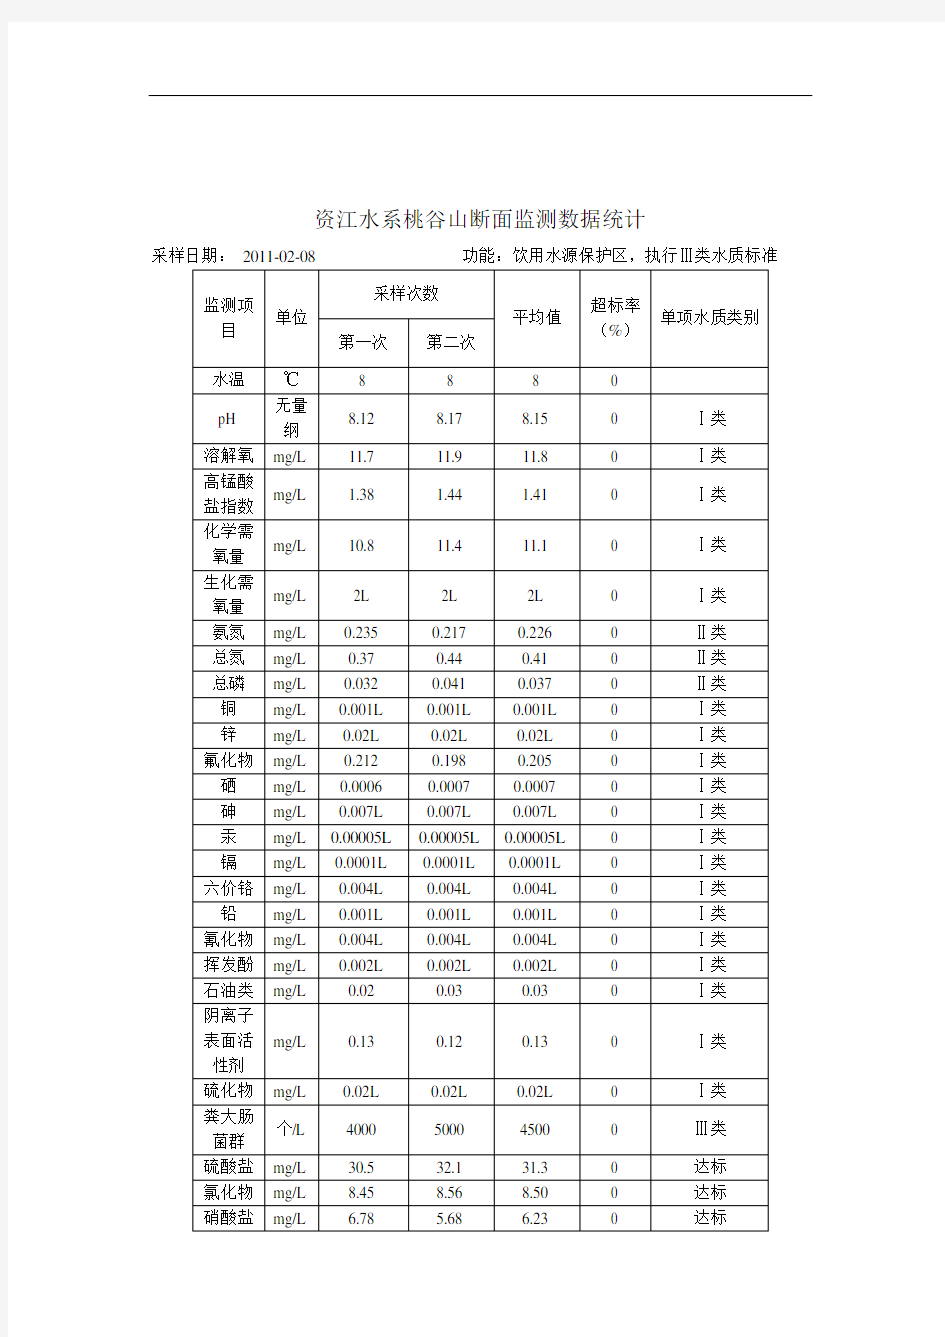 资江水系桃谷山断面监测数据统计